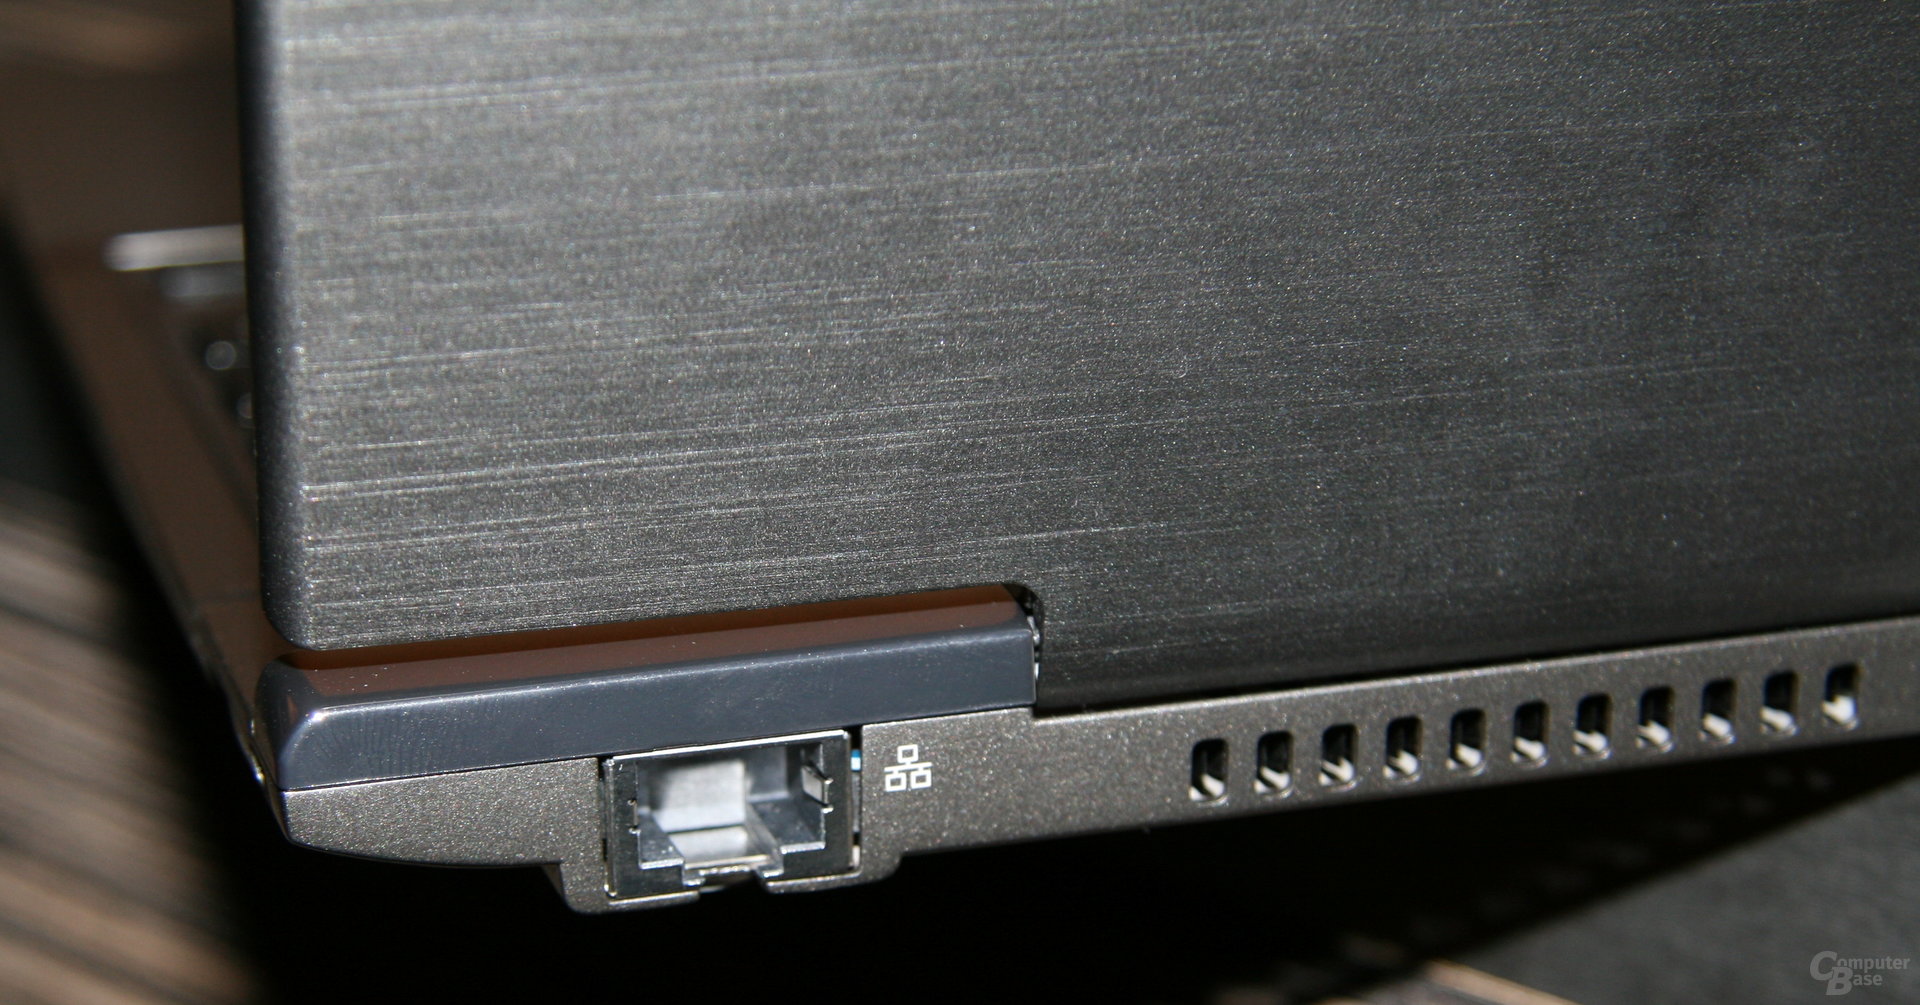 Ultrabooks von Acer, Asus, Lenovo und Toshiba im Bild